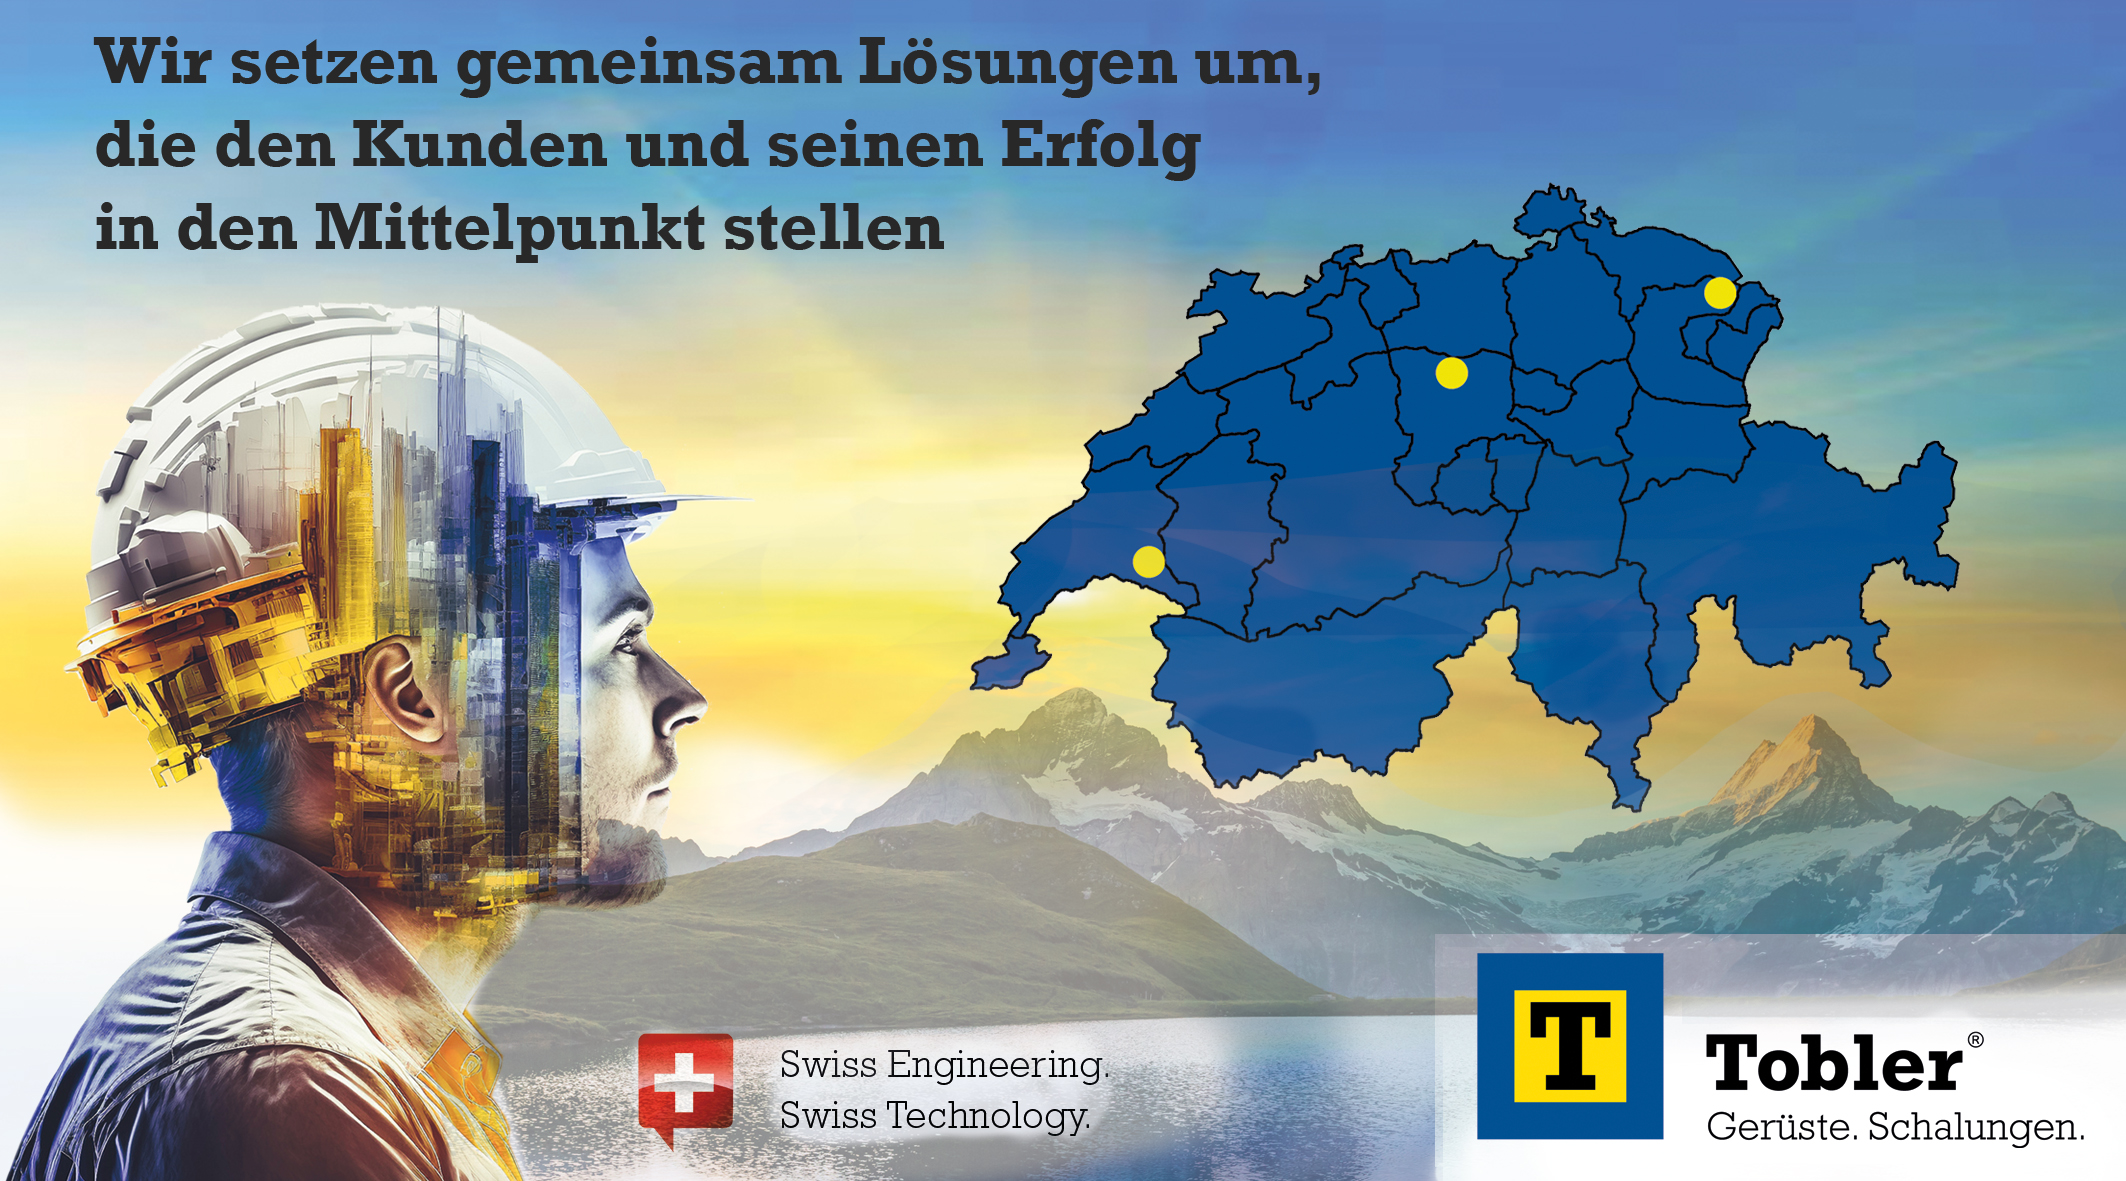 Tobler AG übernimmt Conrad Kern – Schalungssysteme am Standort Sursee